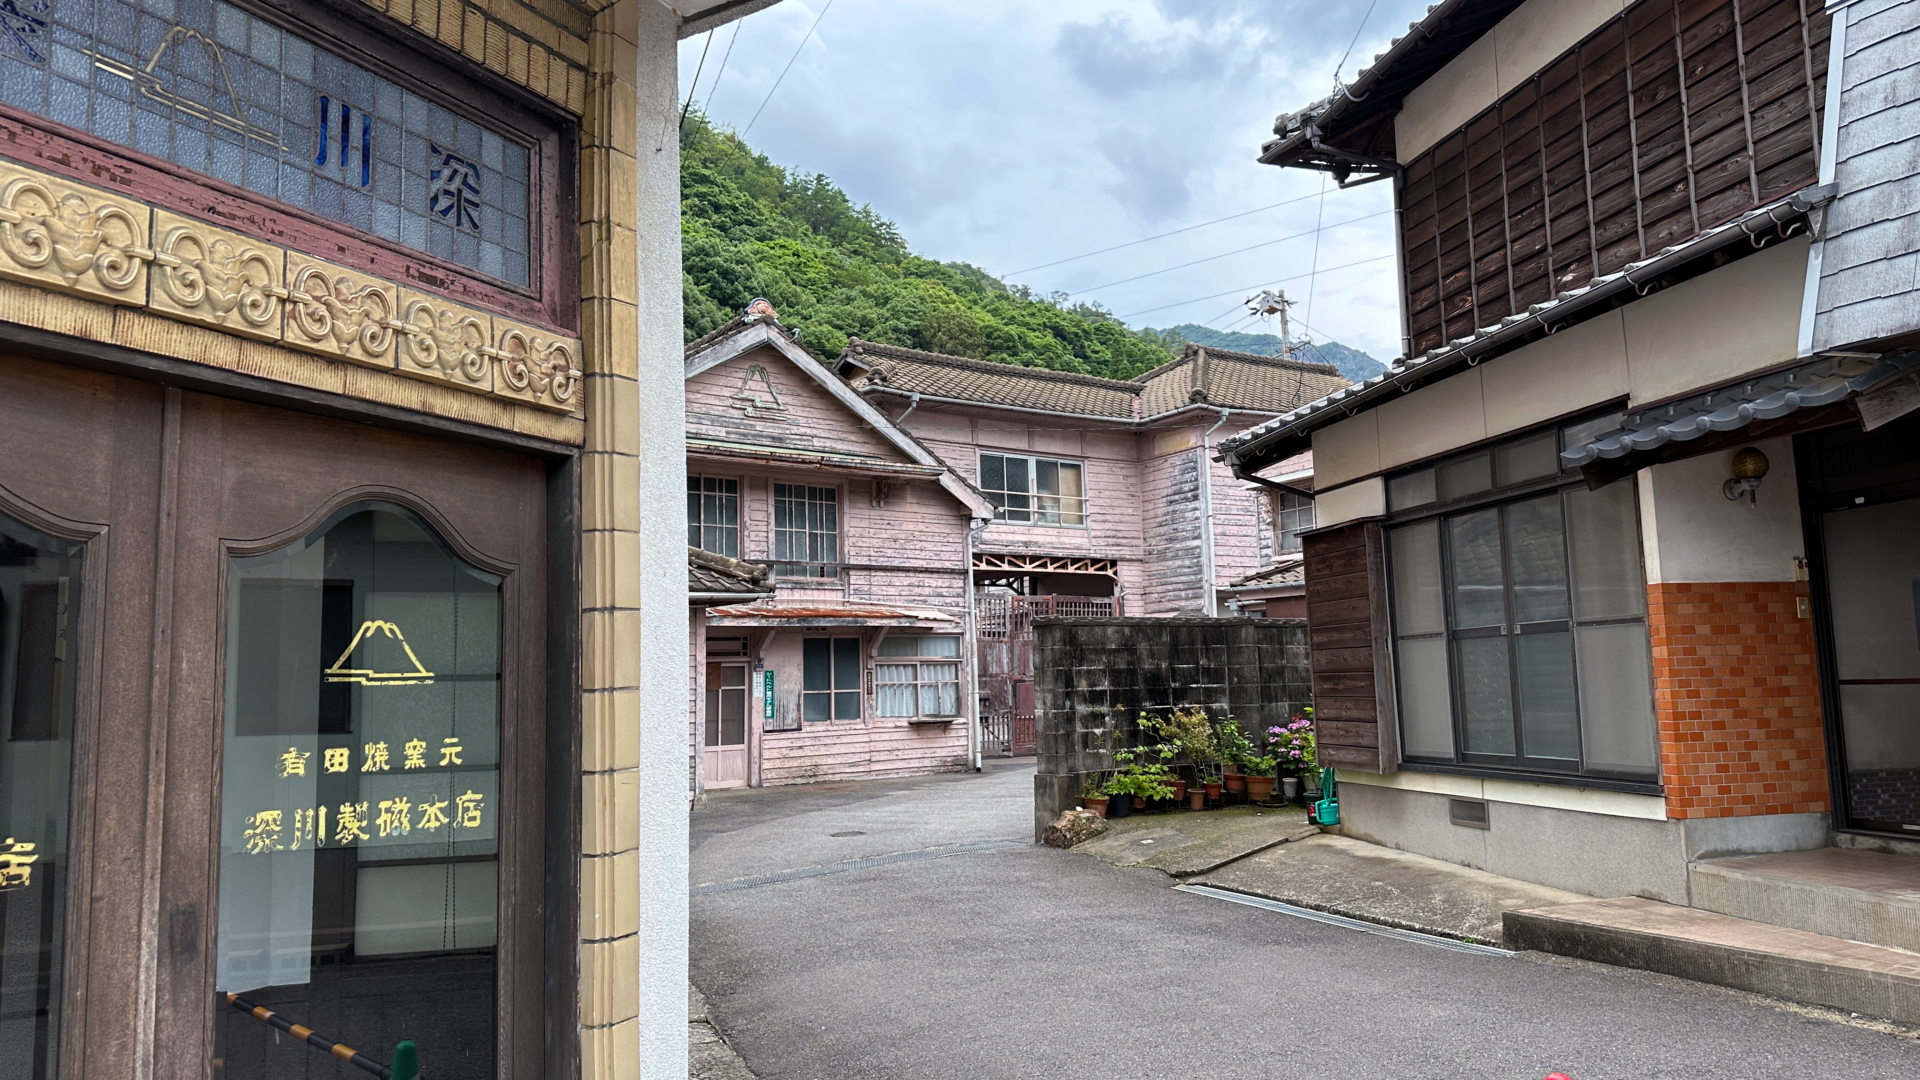 Der historische Sitz der Porzellanmanufaktur Fukagawa Seiji, die ab 1910 offizieller Lieferant der kaiserlichen Familie war.